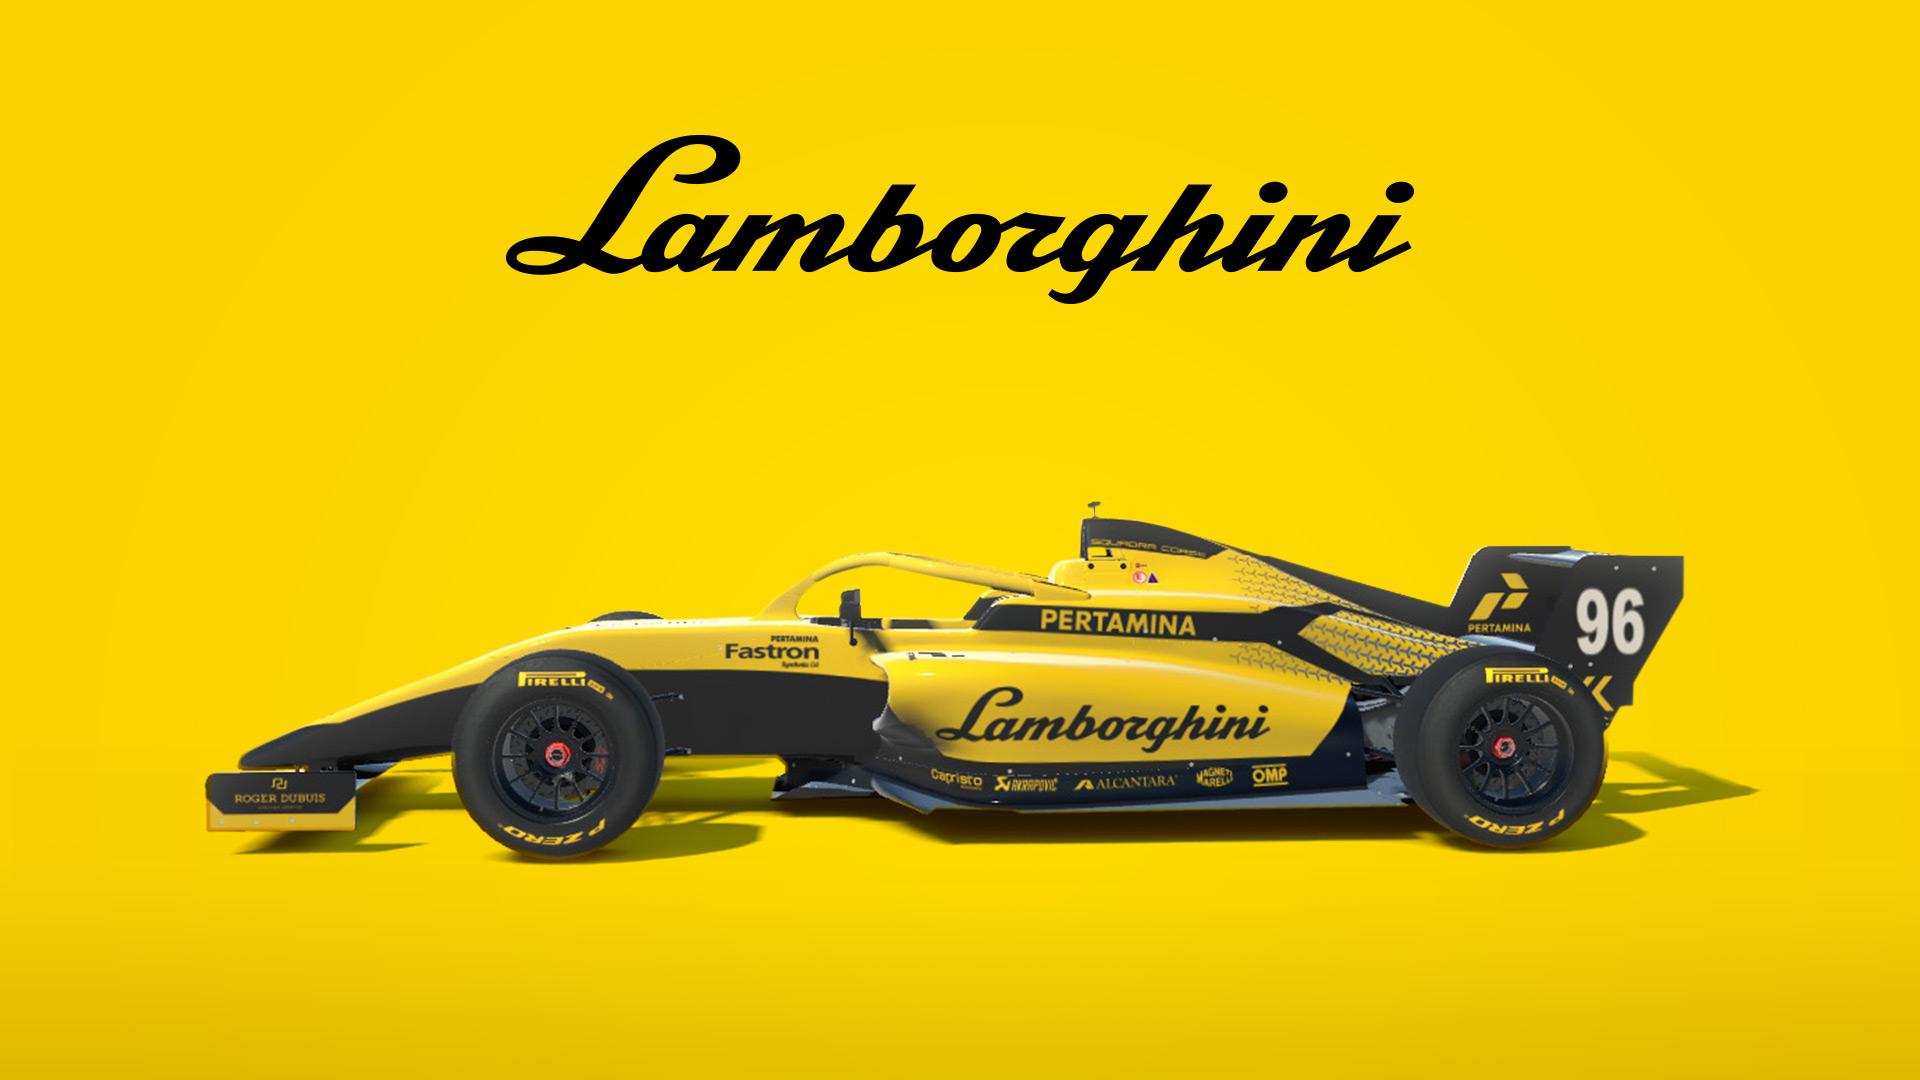 Lamborghini F1-21 concept iR04 by Alex Schmurtz - Trading Paints